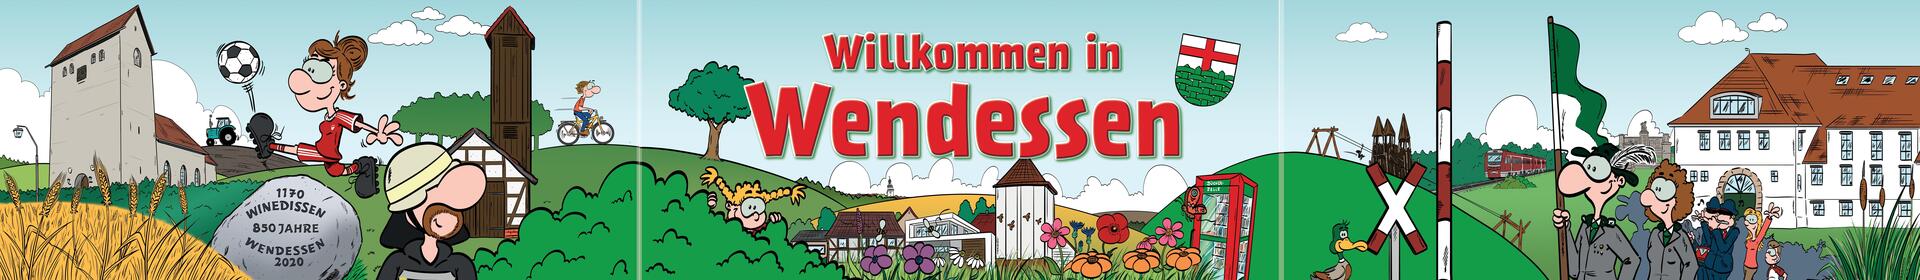 Comicartig gezeichnetes Banner mit Szenen aus dem Dorfleben von Wendessen.